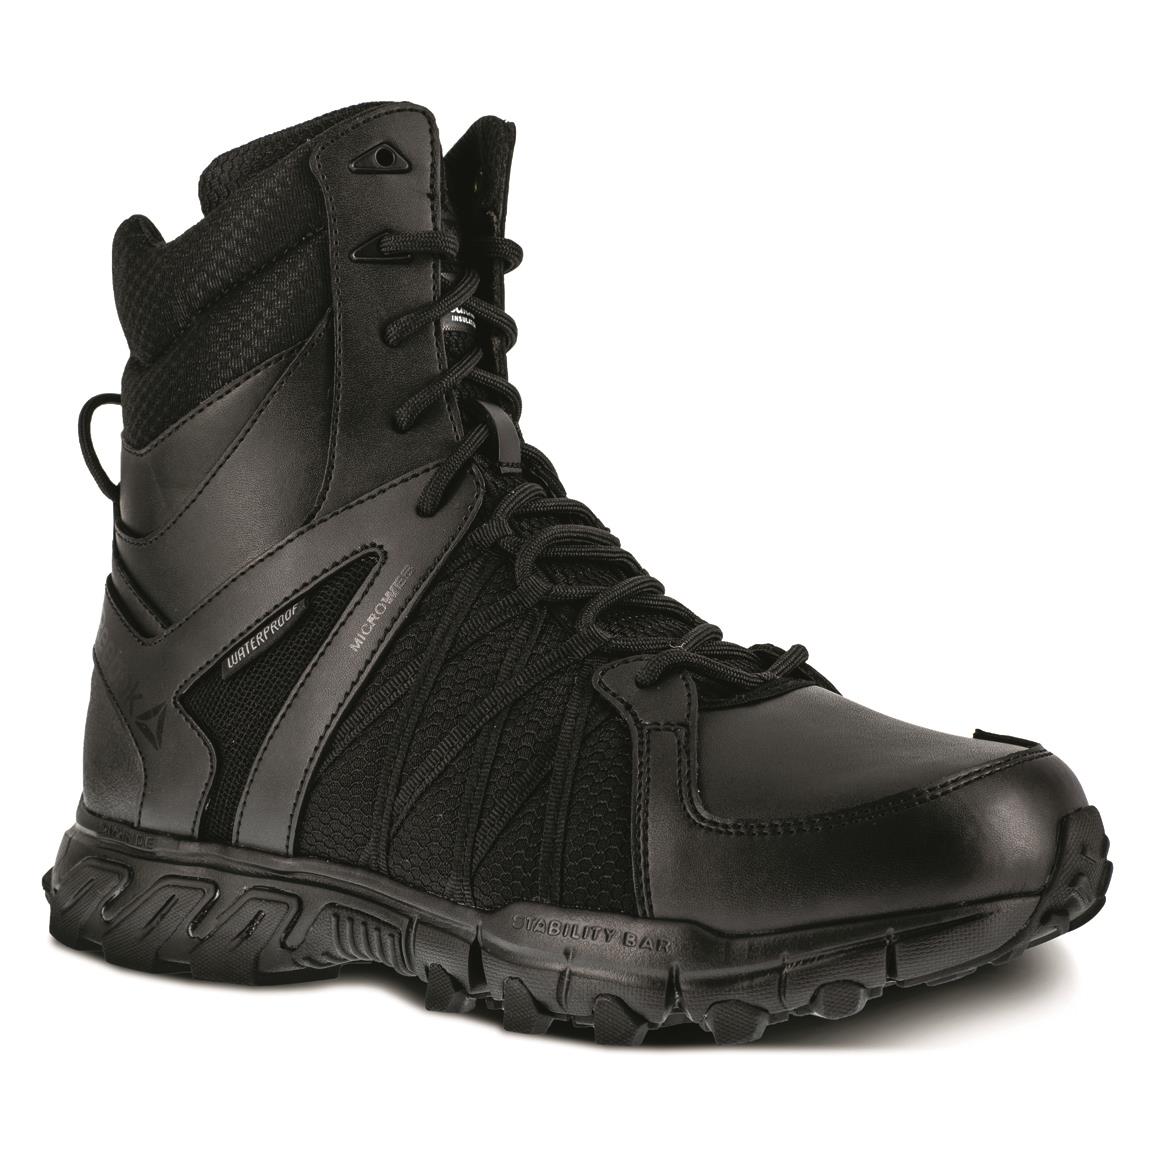 Reebok Men's Trailgrip 8" Side-zip Waterproof Insulated Tactical Boots, 200 Gram, Black